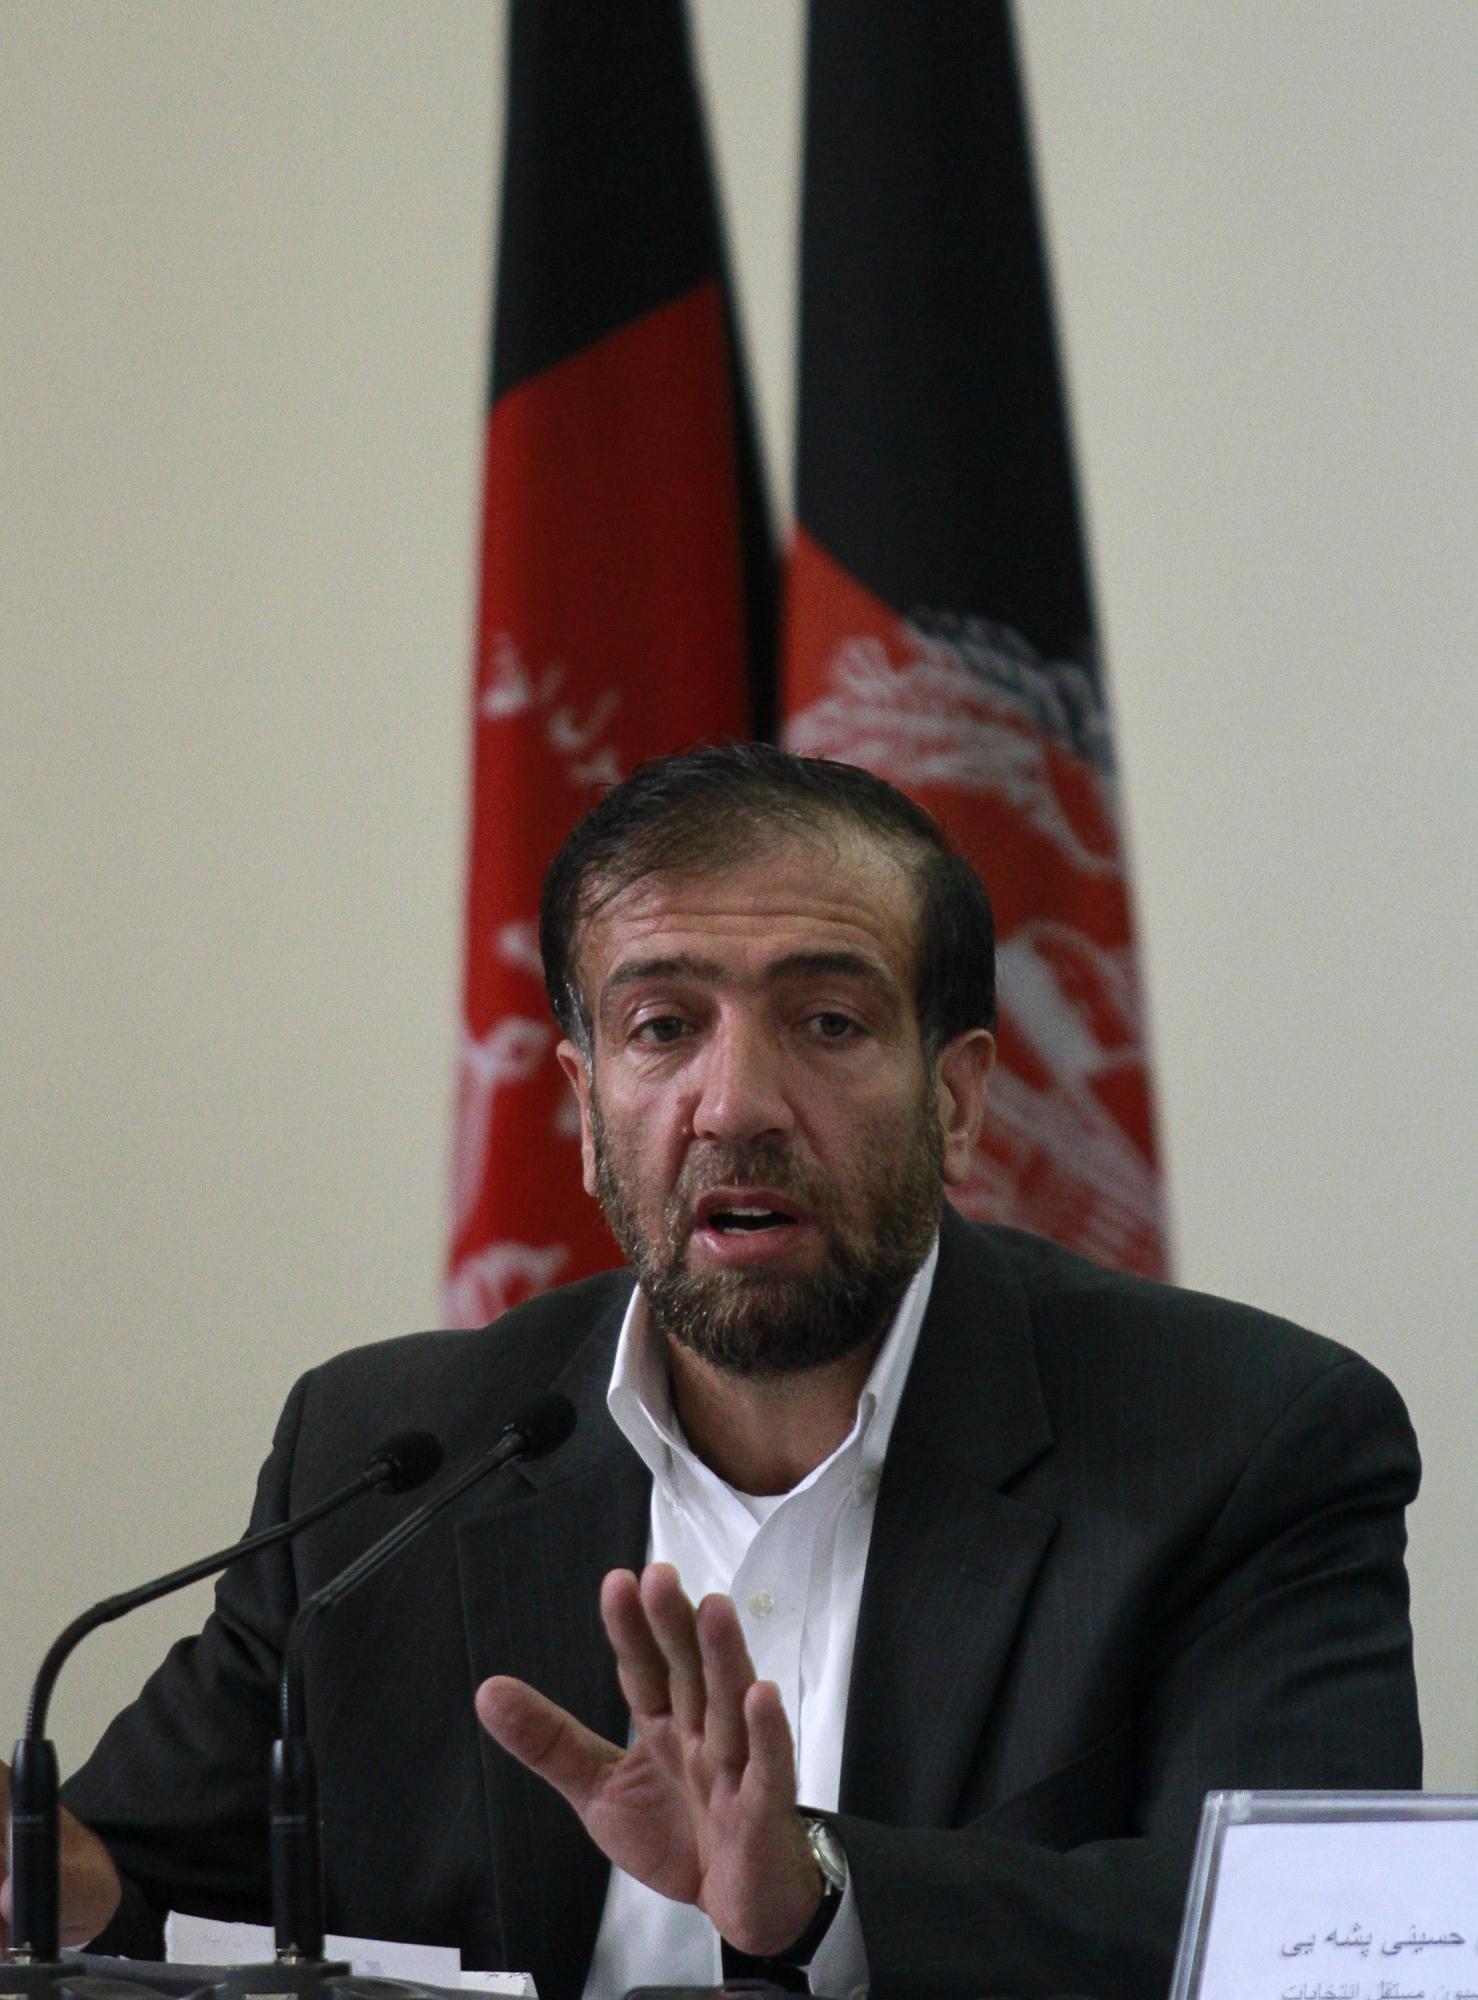 塔利班获准参加2014年阿富汗大选 或与联军谈判